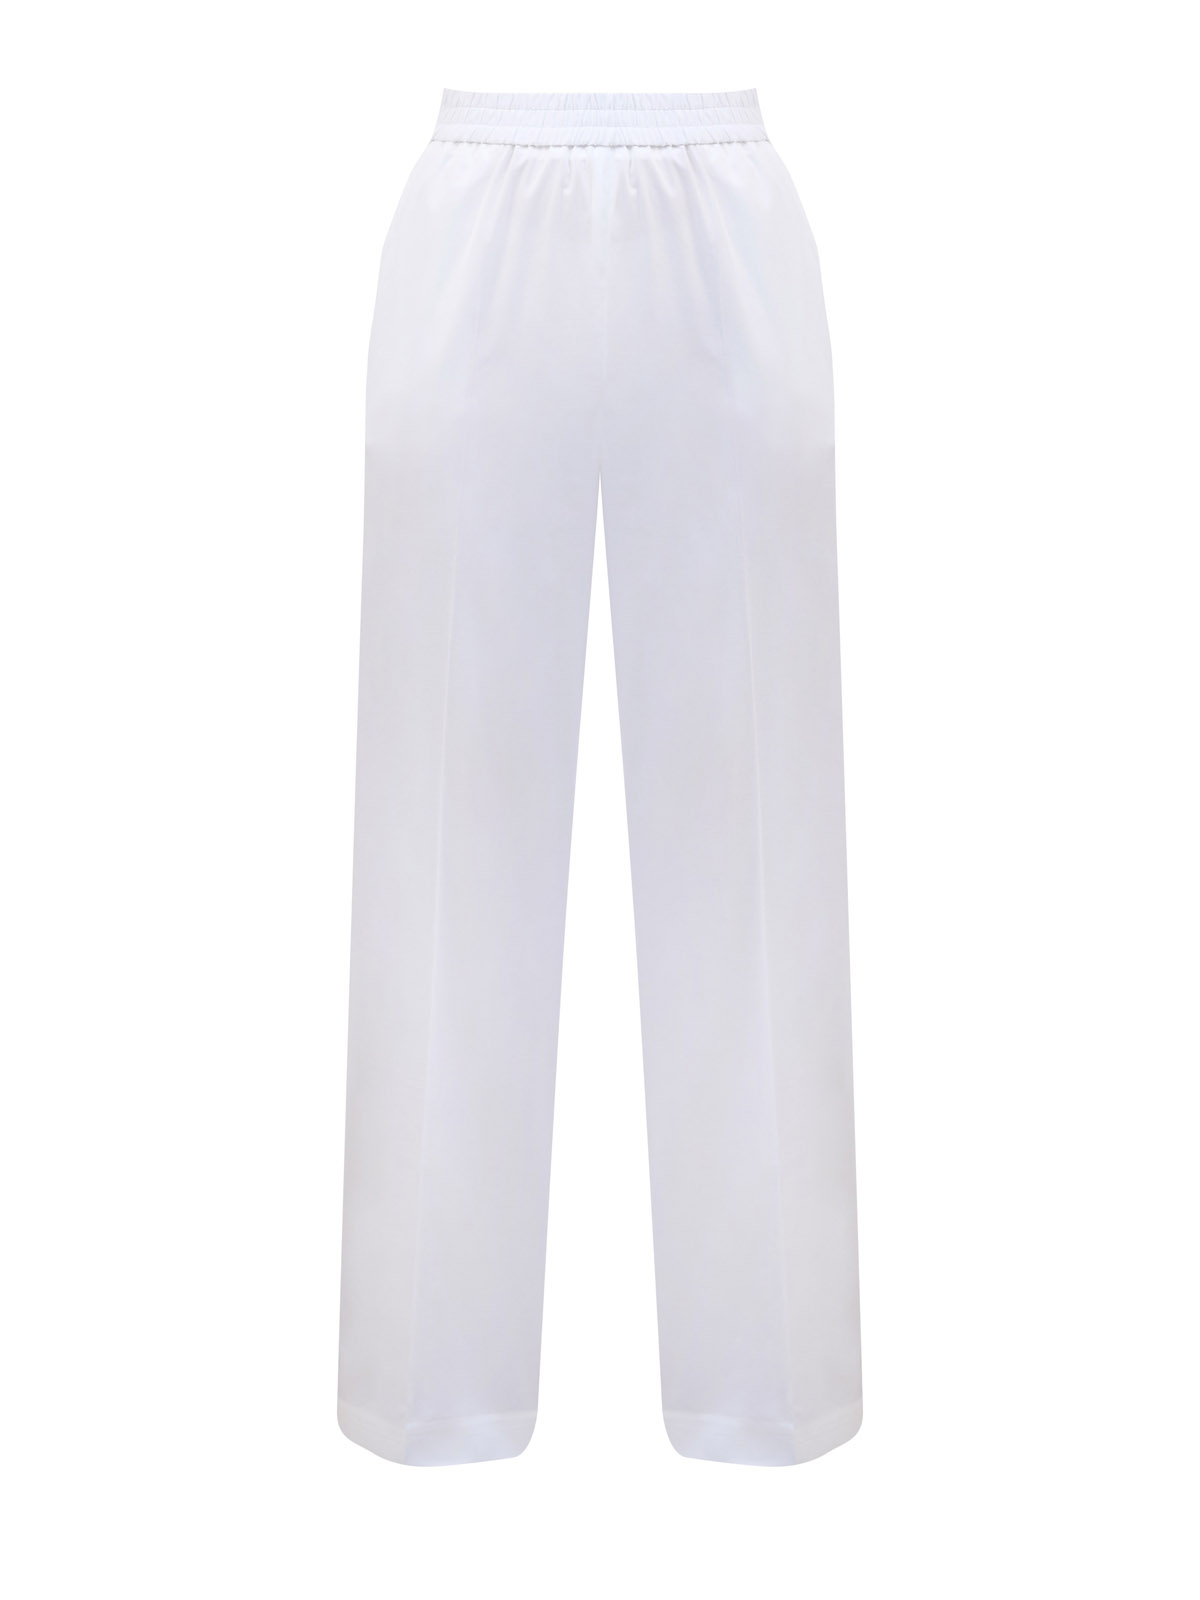 Однотонные брюки свободного кроя из хлопка с эластичным поясом ELEVENTY, цвет белый, размер 38;40;42;44